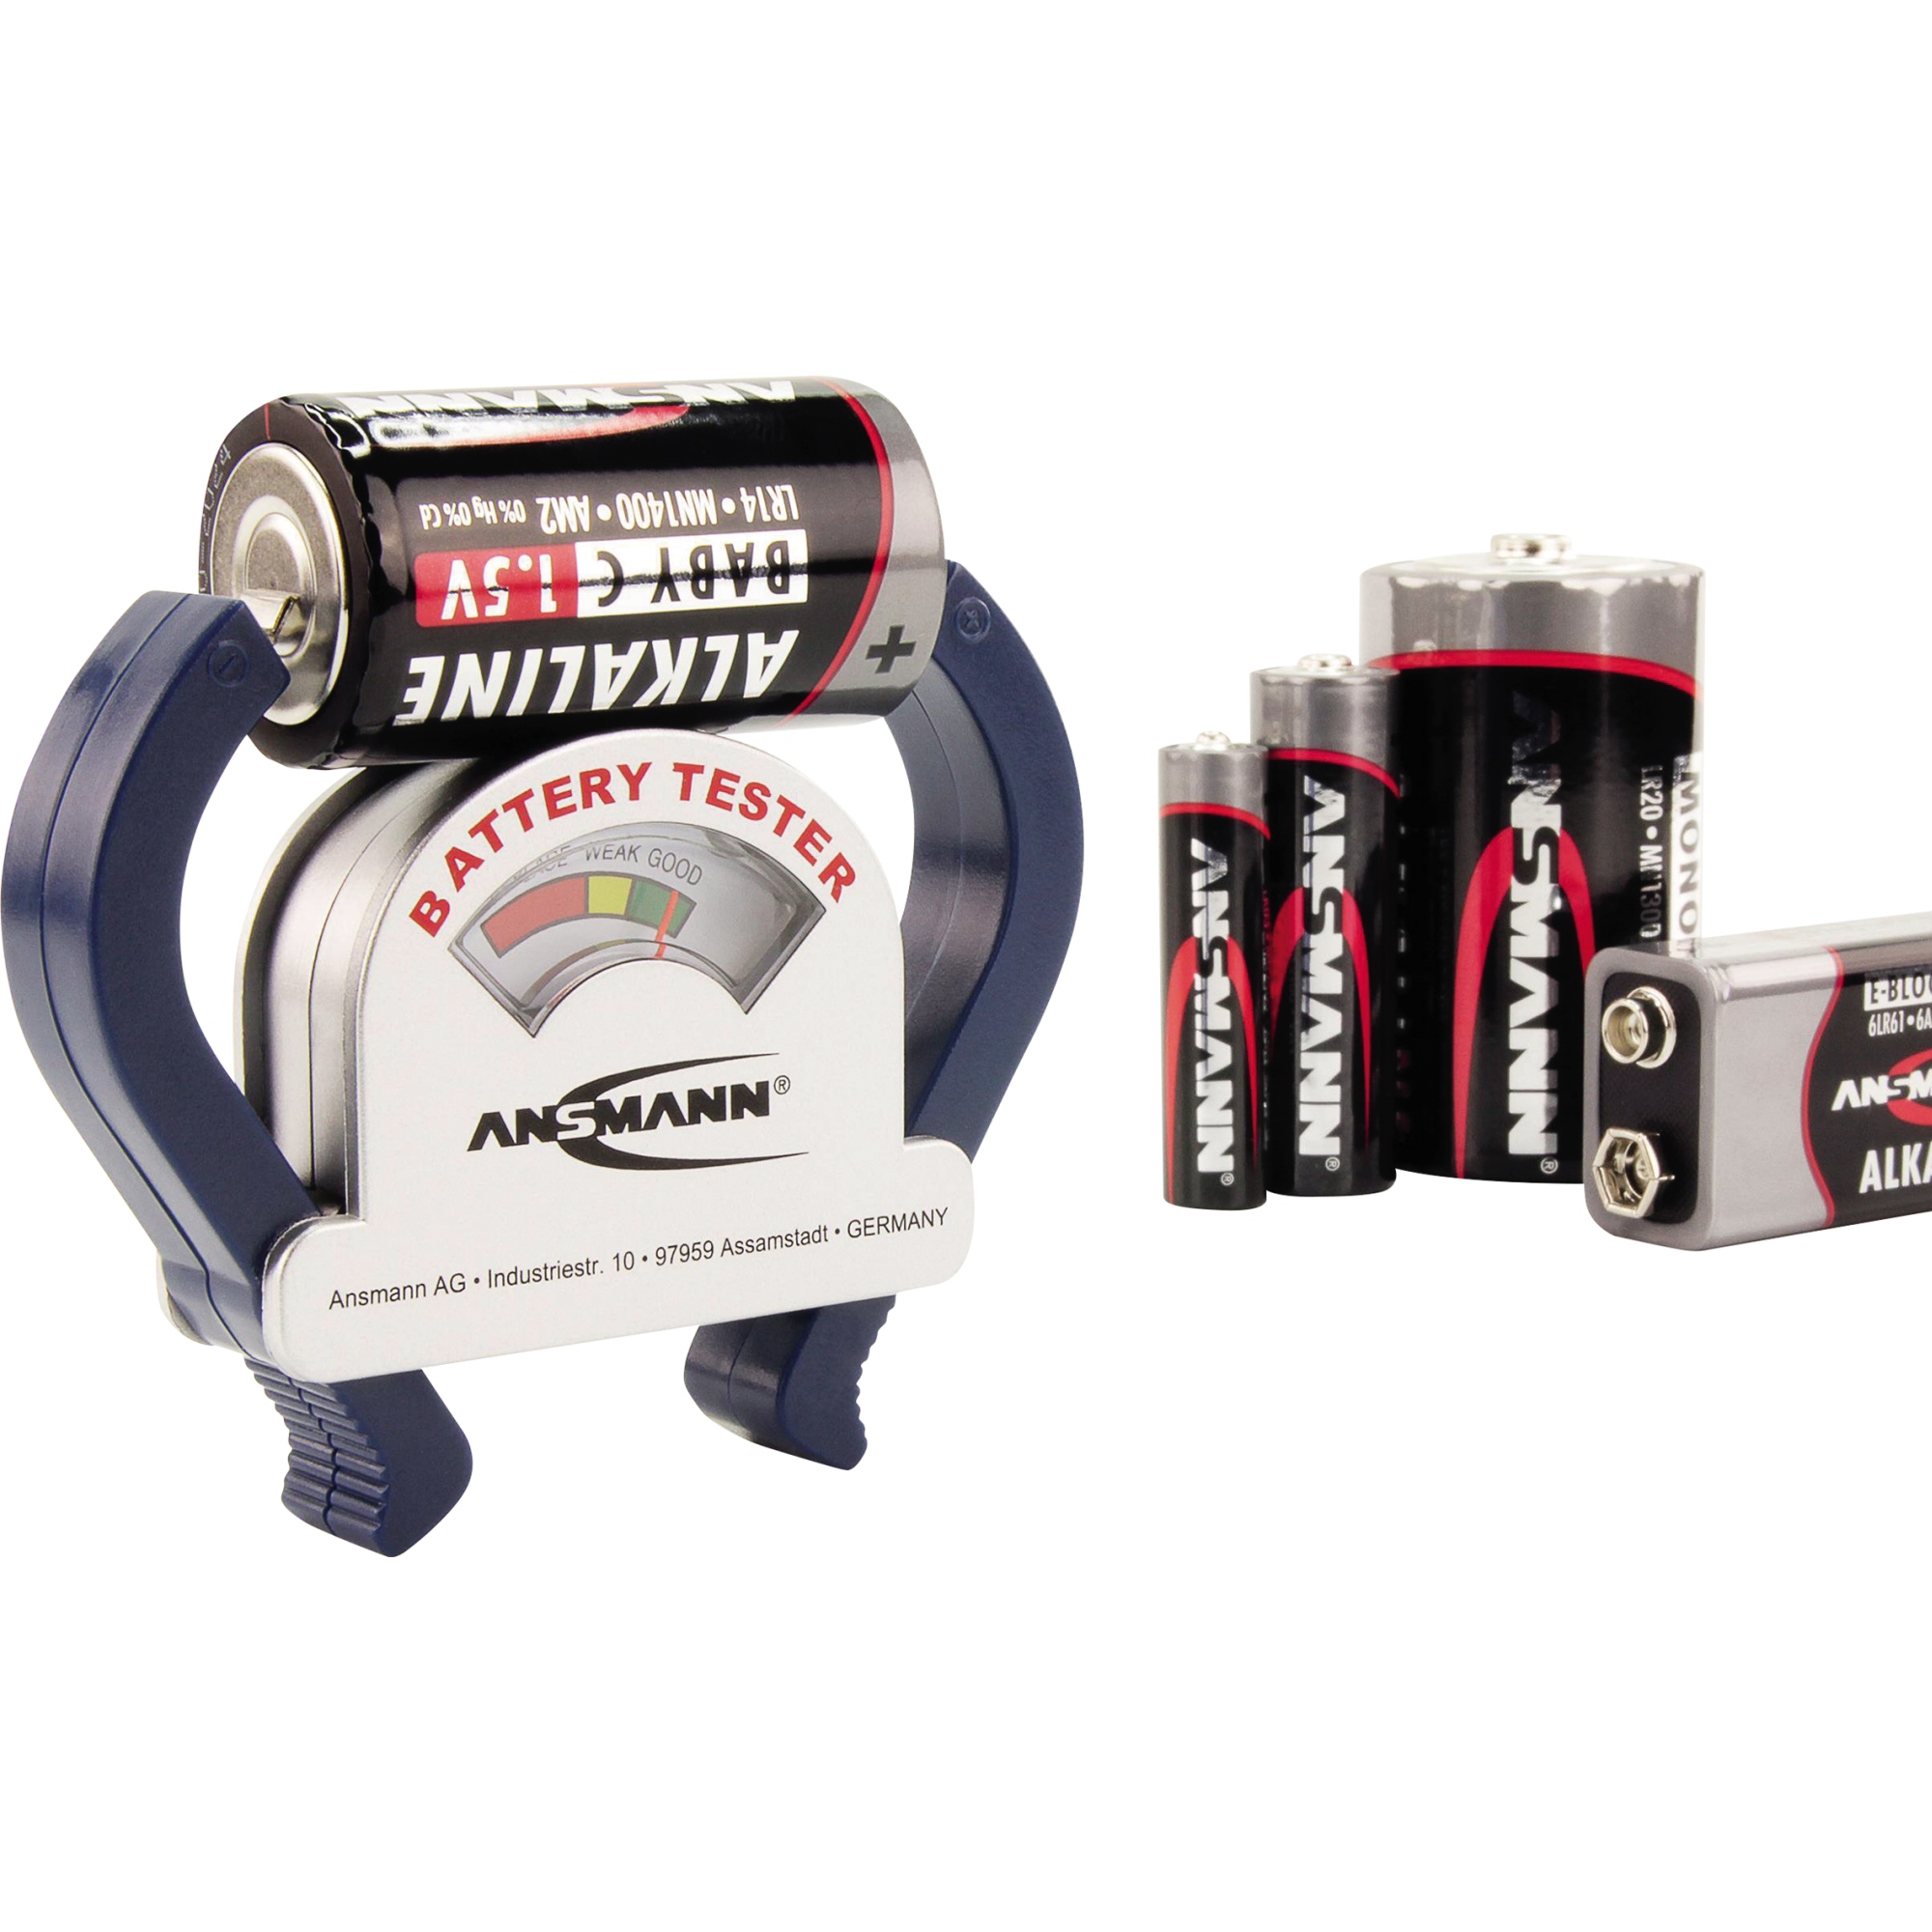 ANSMANN Batterietester 4000001-510 für Thekenbereich